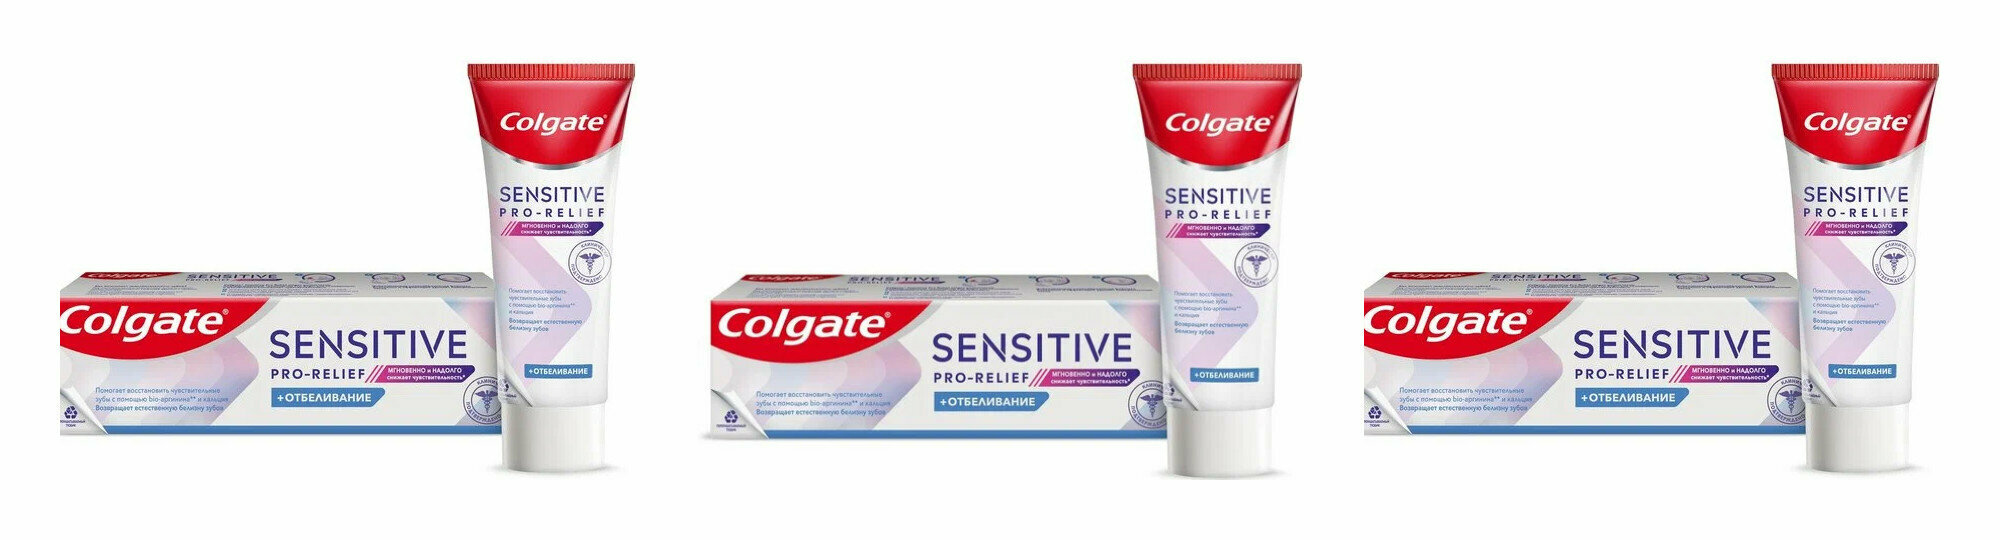 Зубная паста Colgate sensitive pro relief отбеливание, 75мл, 3 шт.